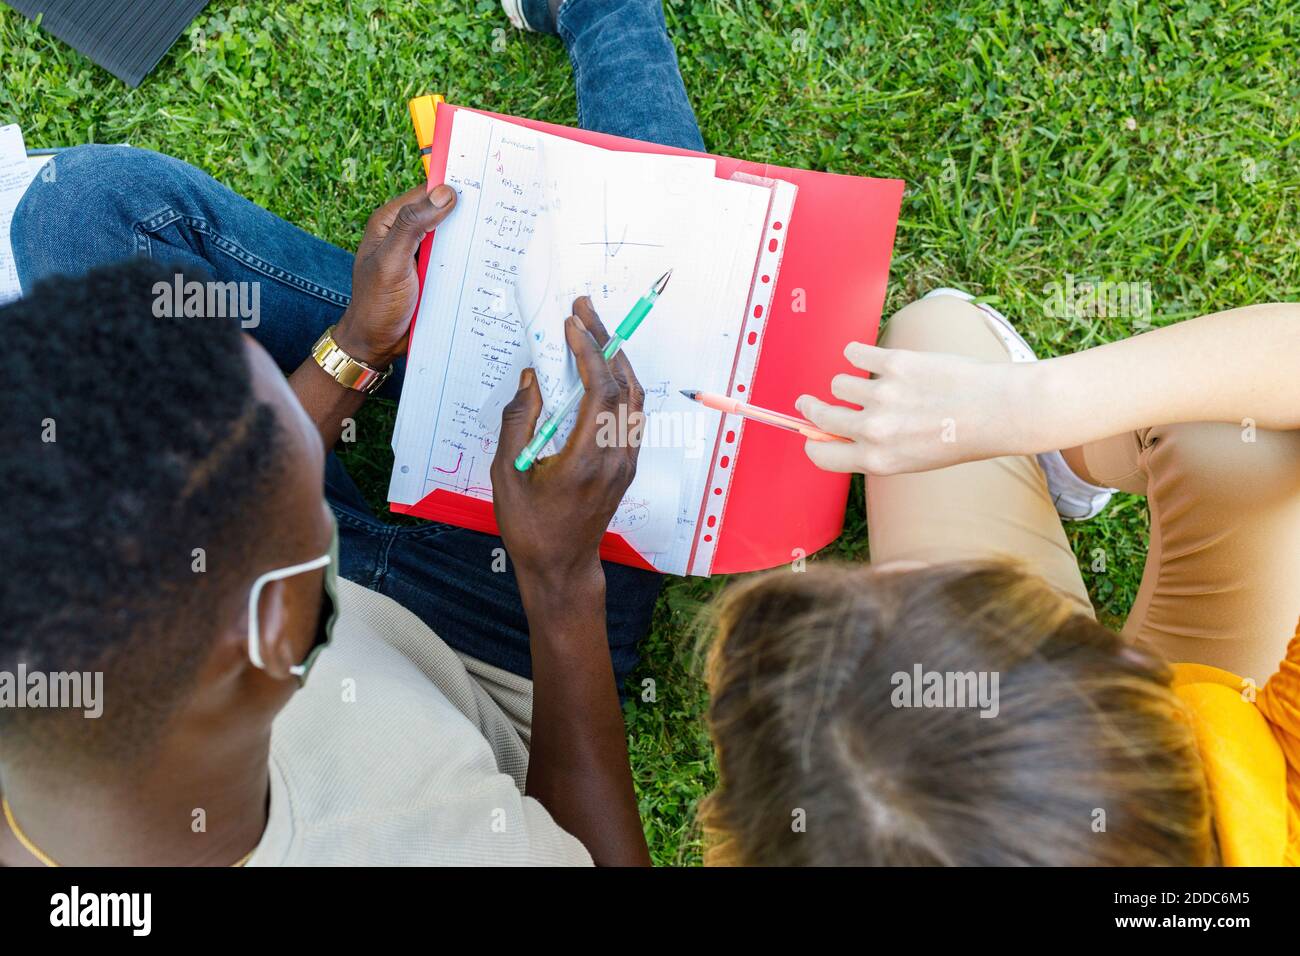 Amis assis sur le gazon tout en étudiant ensemble sur le campus universitaire Banque D'Images